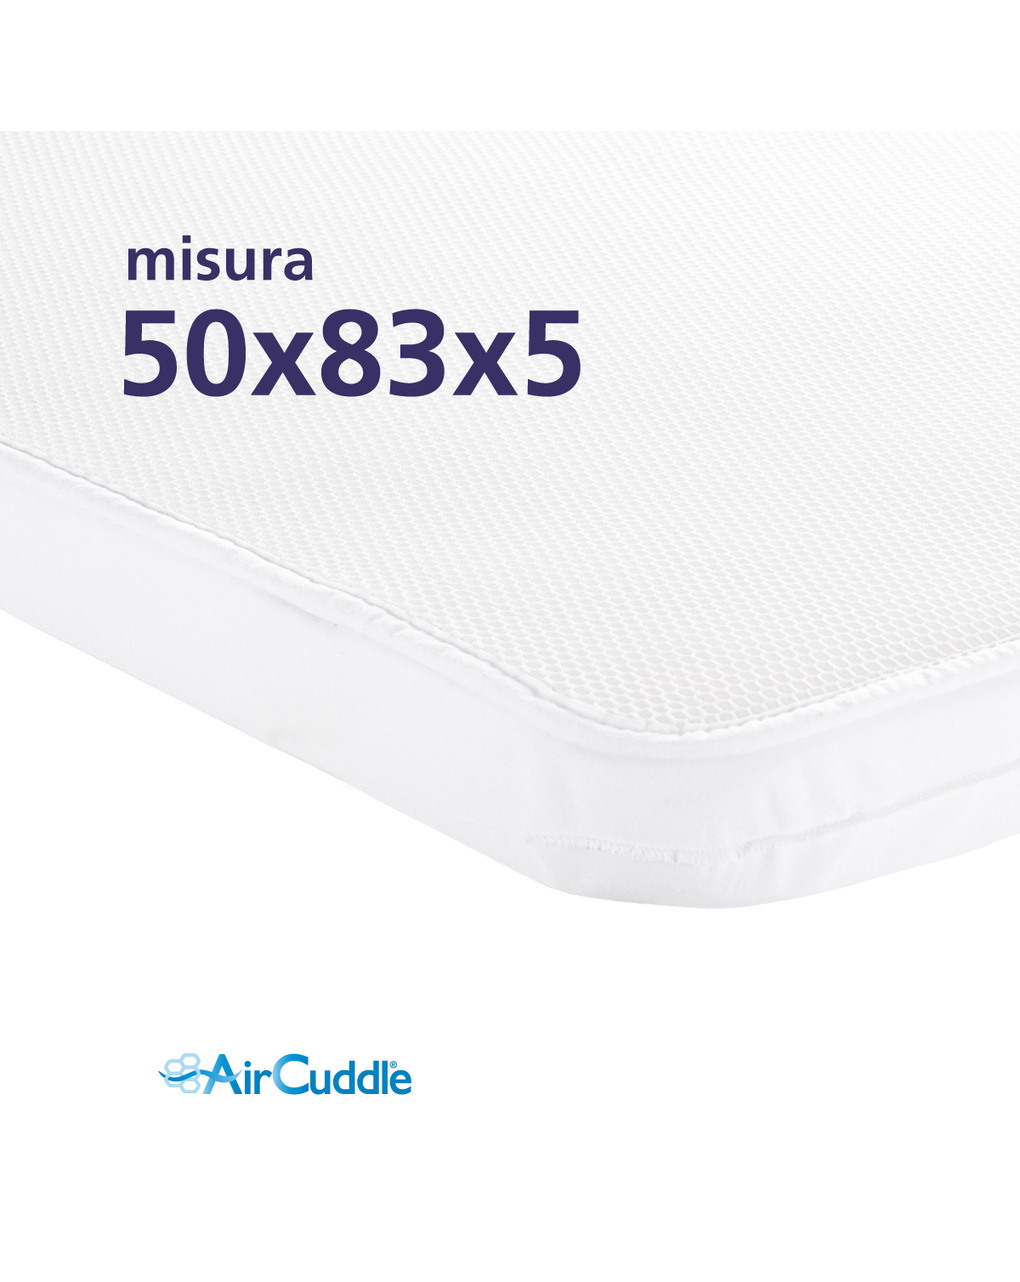 Maxi materasso ergonomico + coprimaterasso 3 strati per next2me 50x83x5 cm - aircuddle - AirCuddle